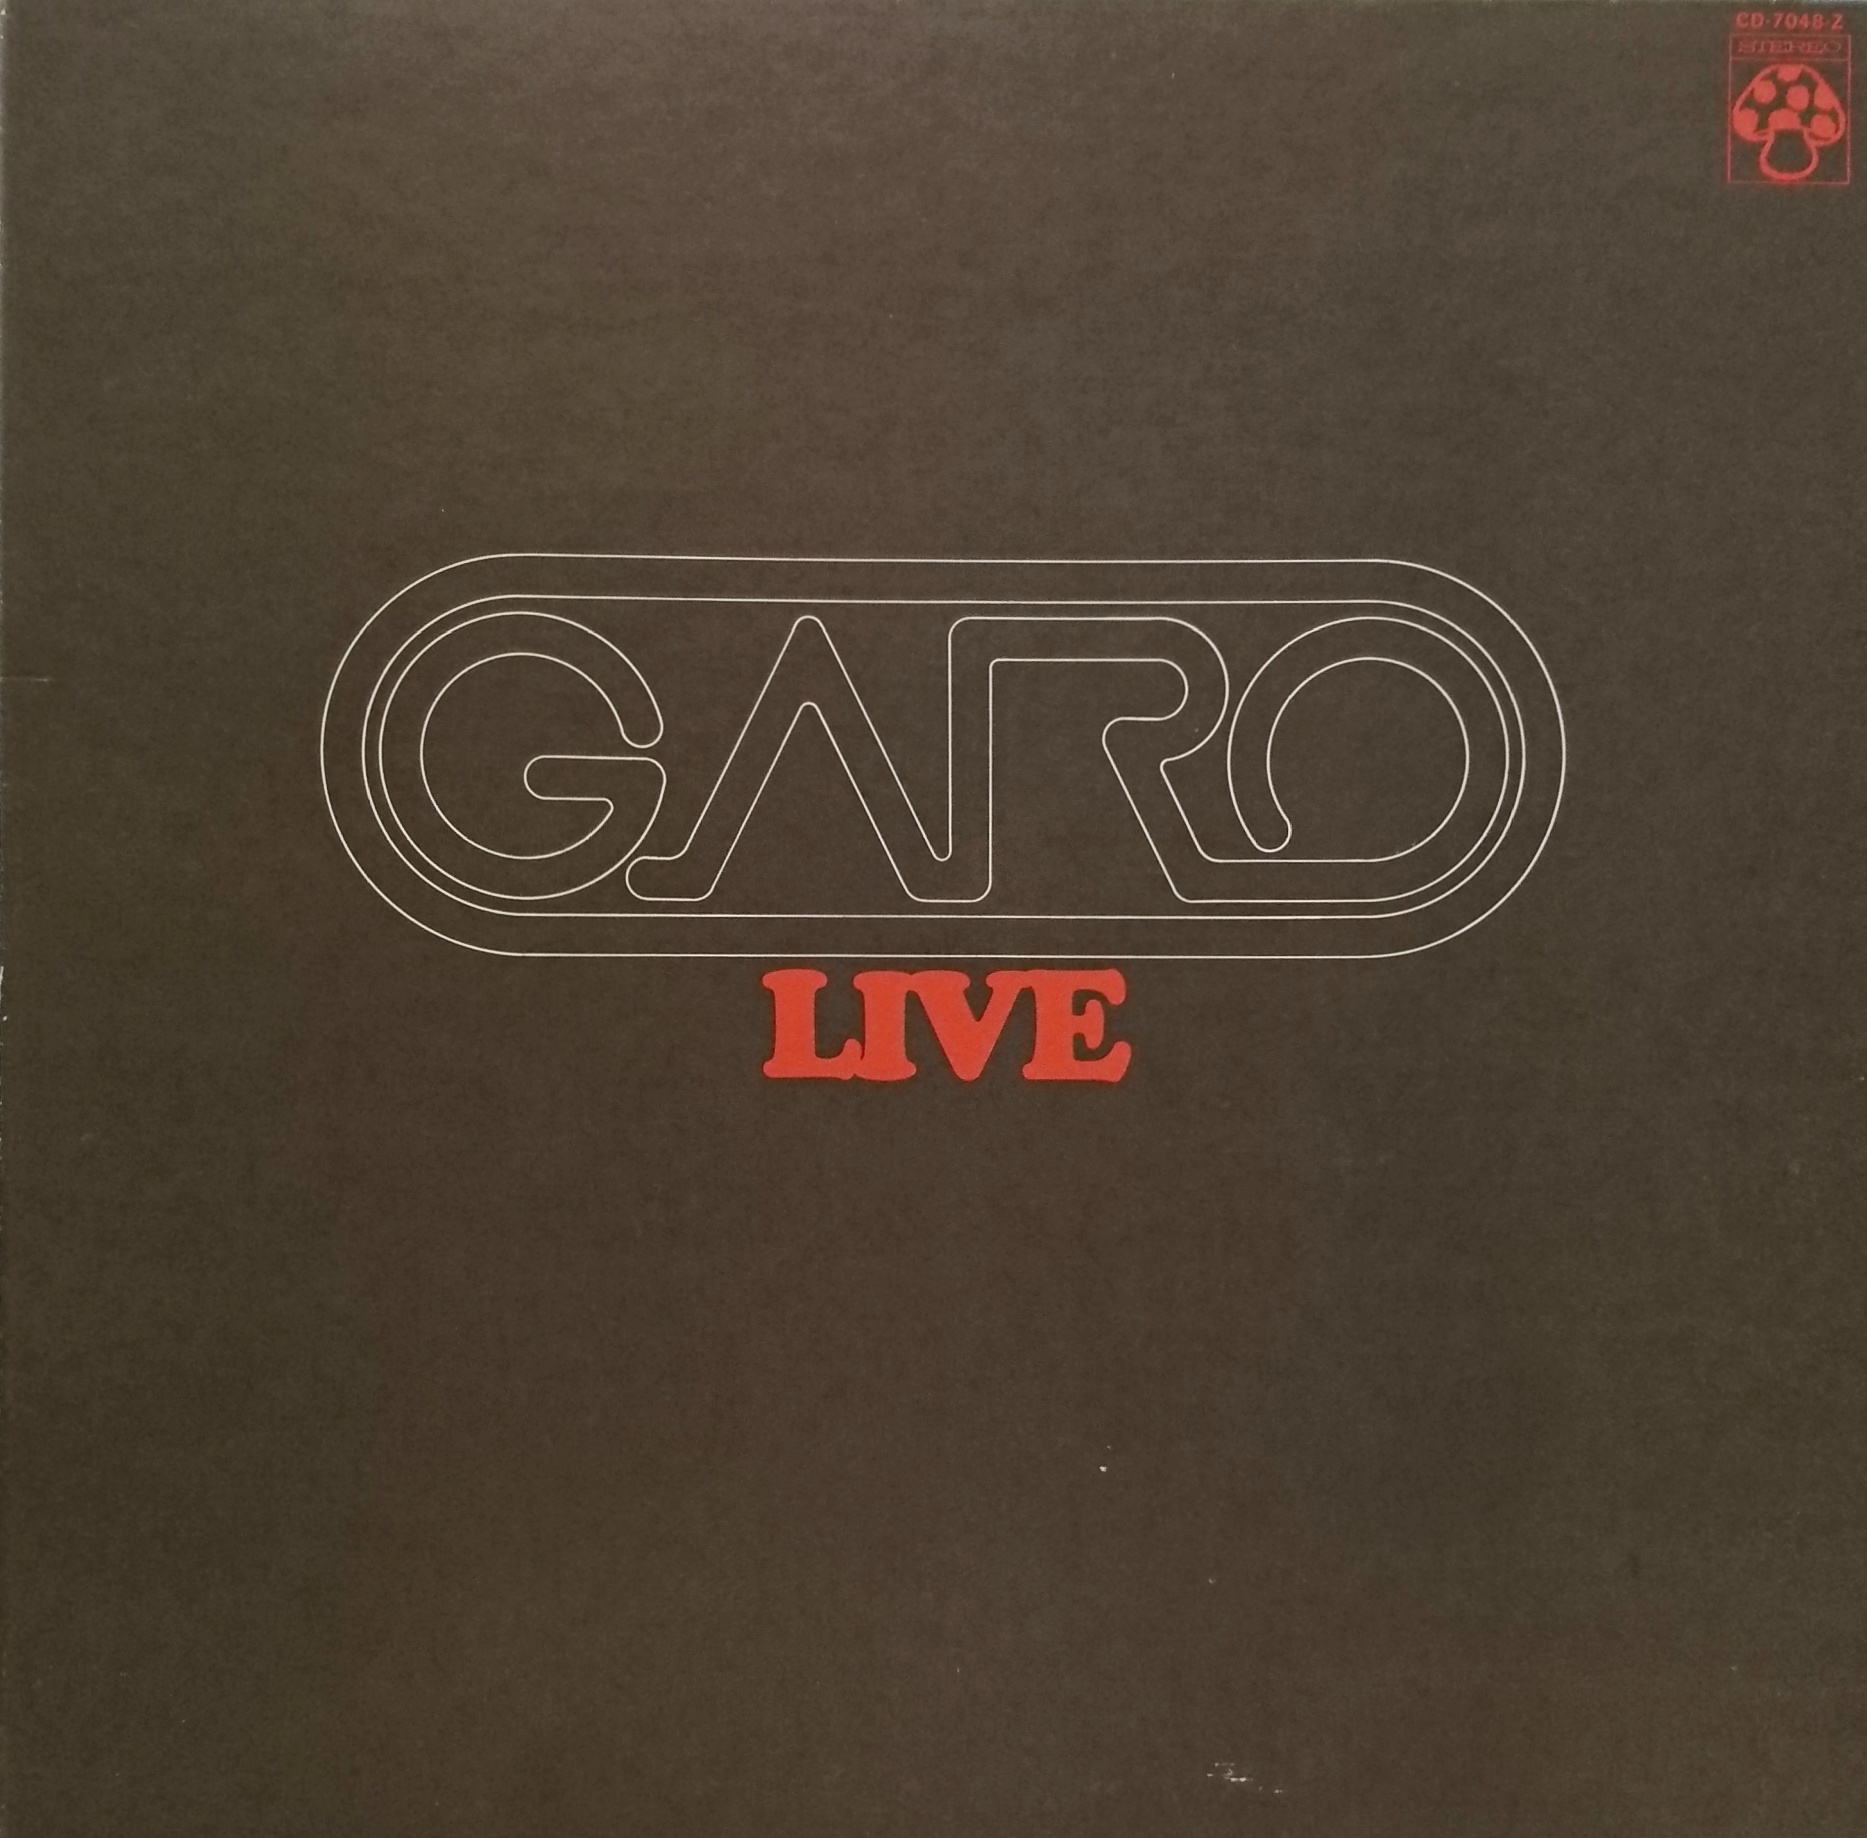 Garo / Live （ガロ／ライブ） | 中古レコード通販・買取のアカル